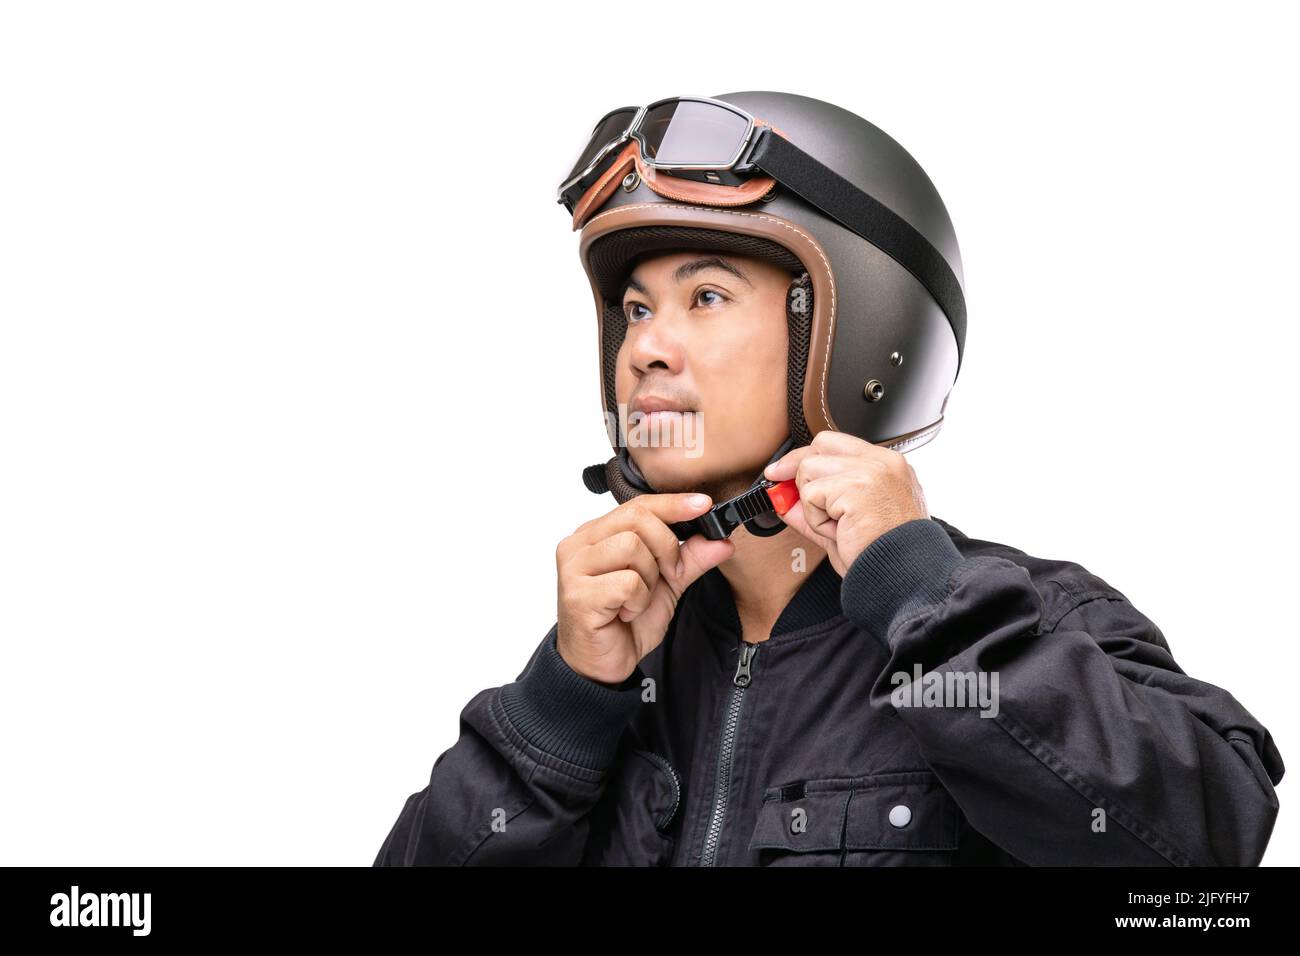 Motorradfahrer oder Fahrer mit Vintage-Helm. Sicheres Fahrkonzept. Studio auf weißem Hintergrund aufgenommen Stockfoto